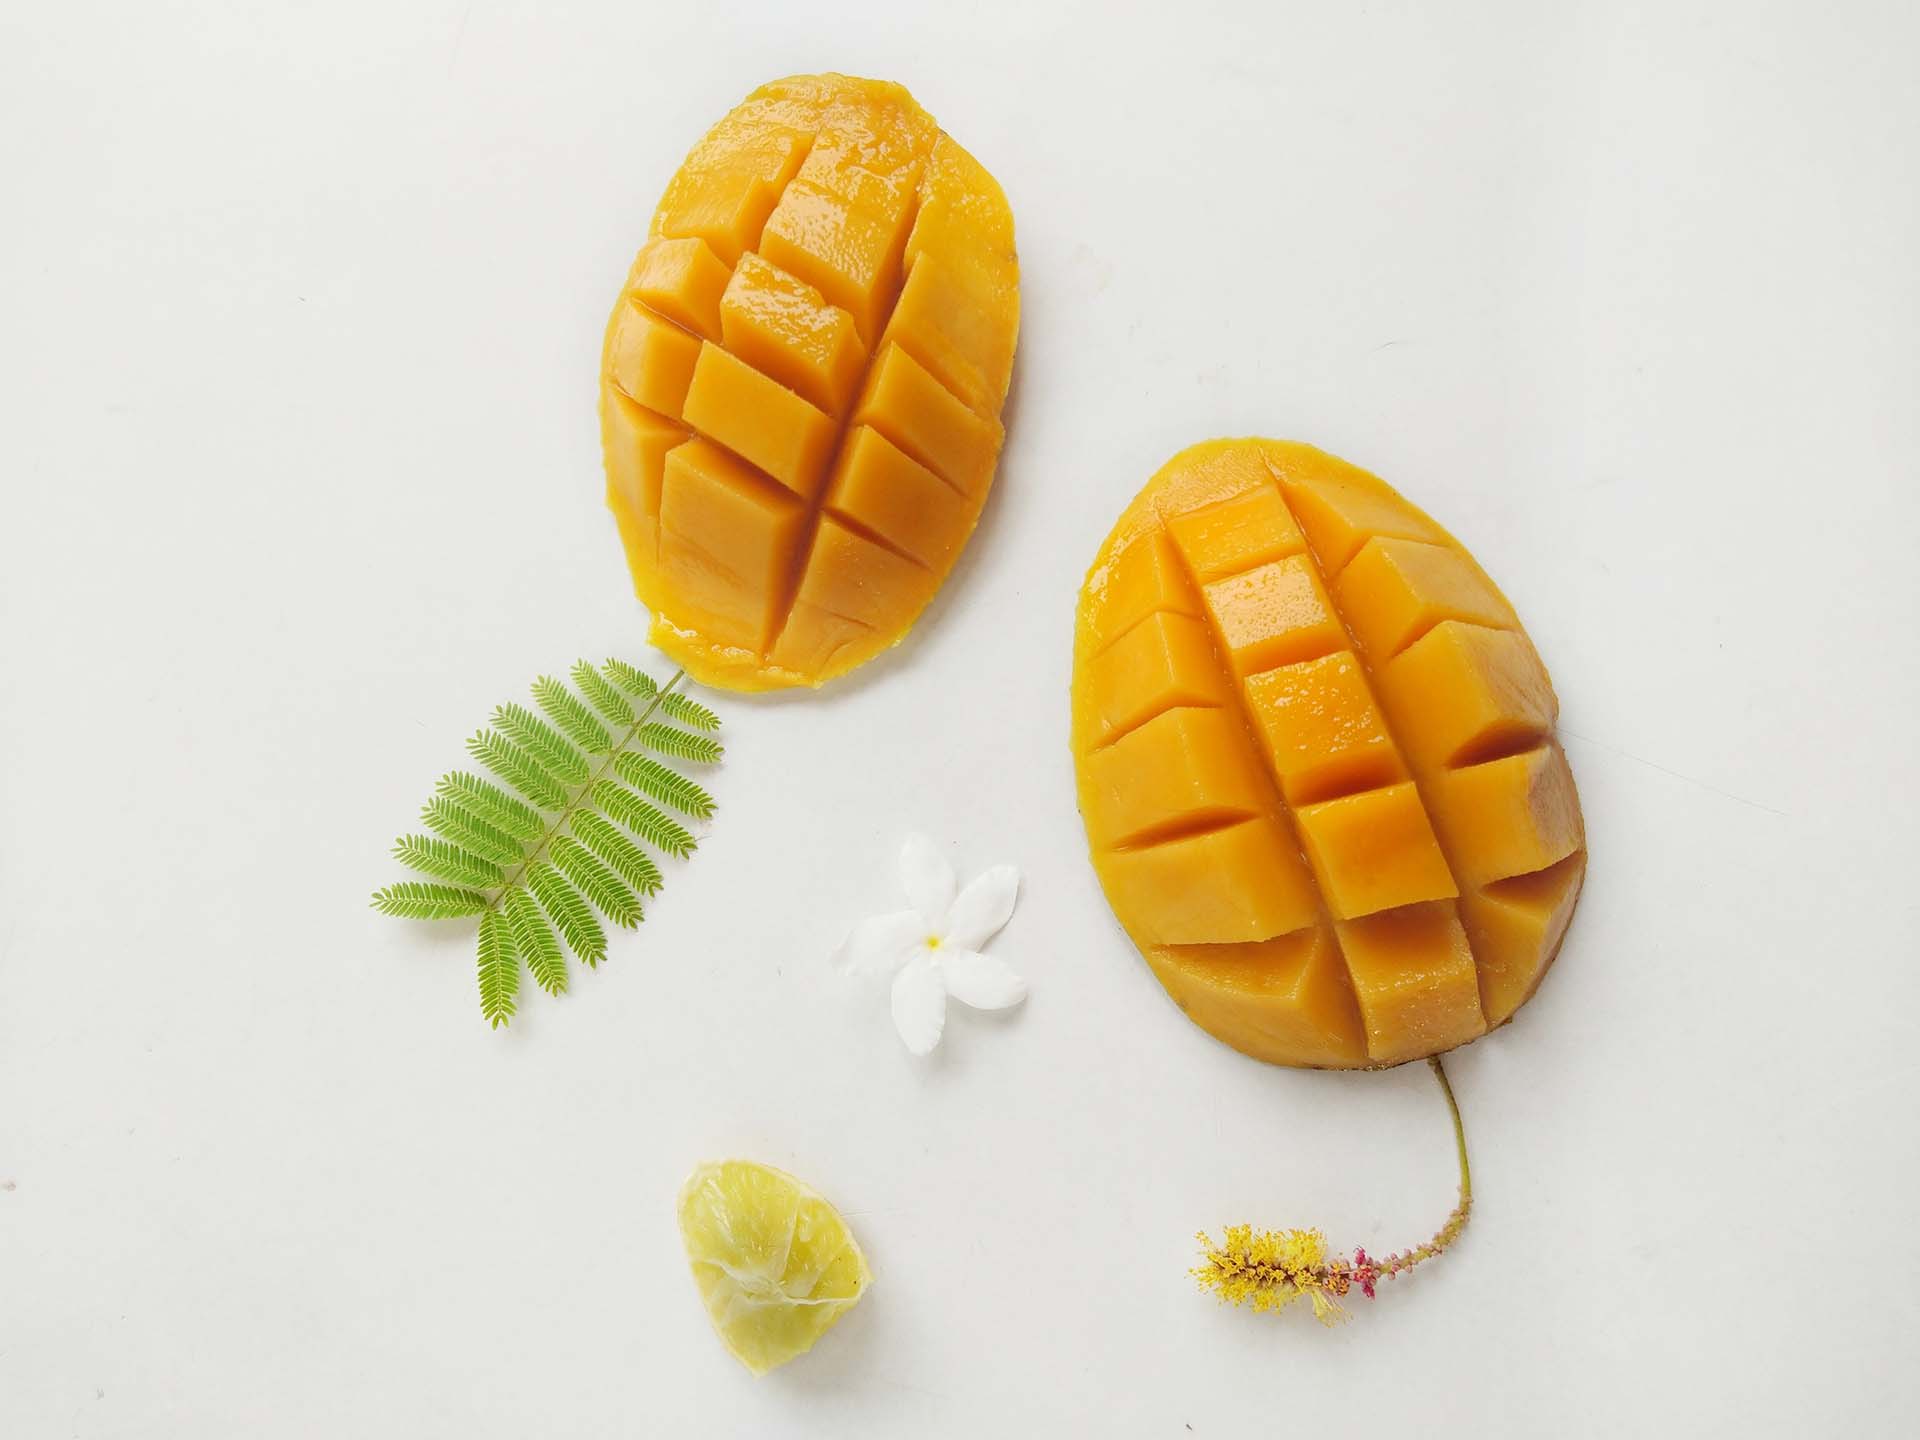 Two mango halves cut into cubes